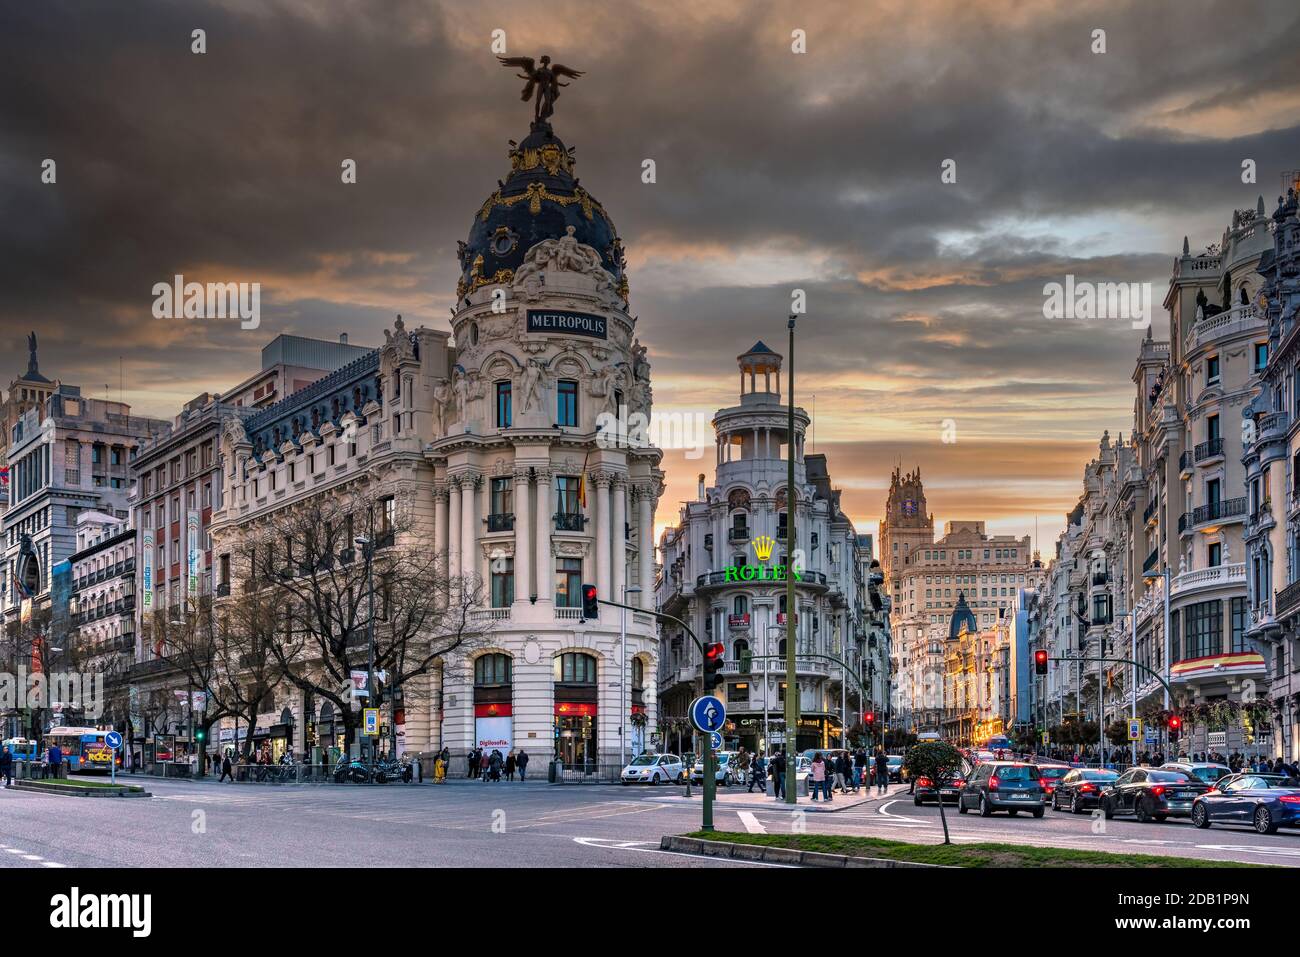 Metropolis Gebäude oder Edificio Metropolis, Madrid, Gemeinschaft von Madrid, Spanien Stockfoto